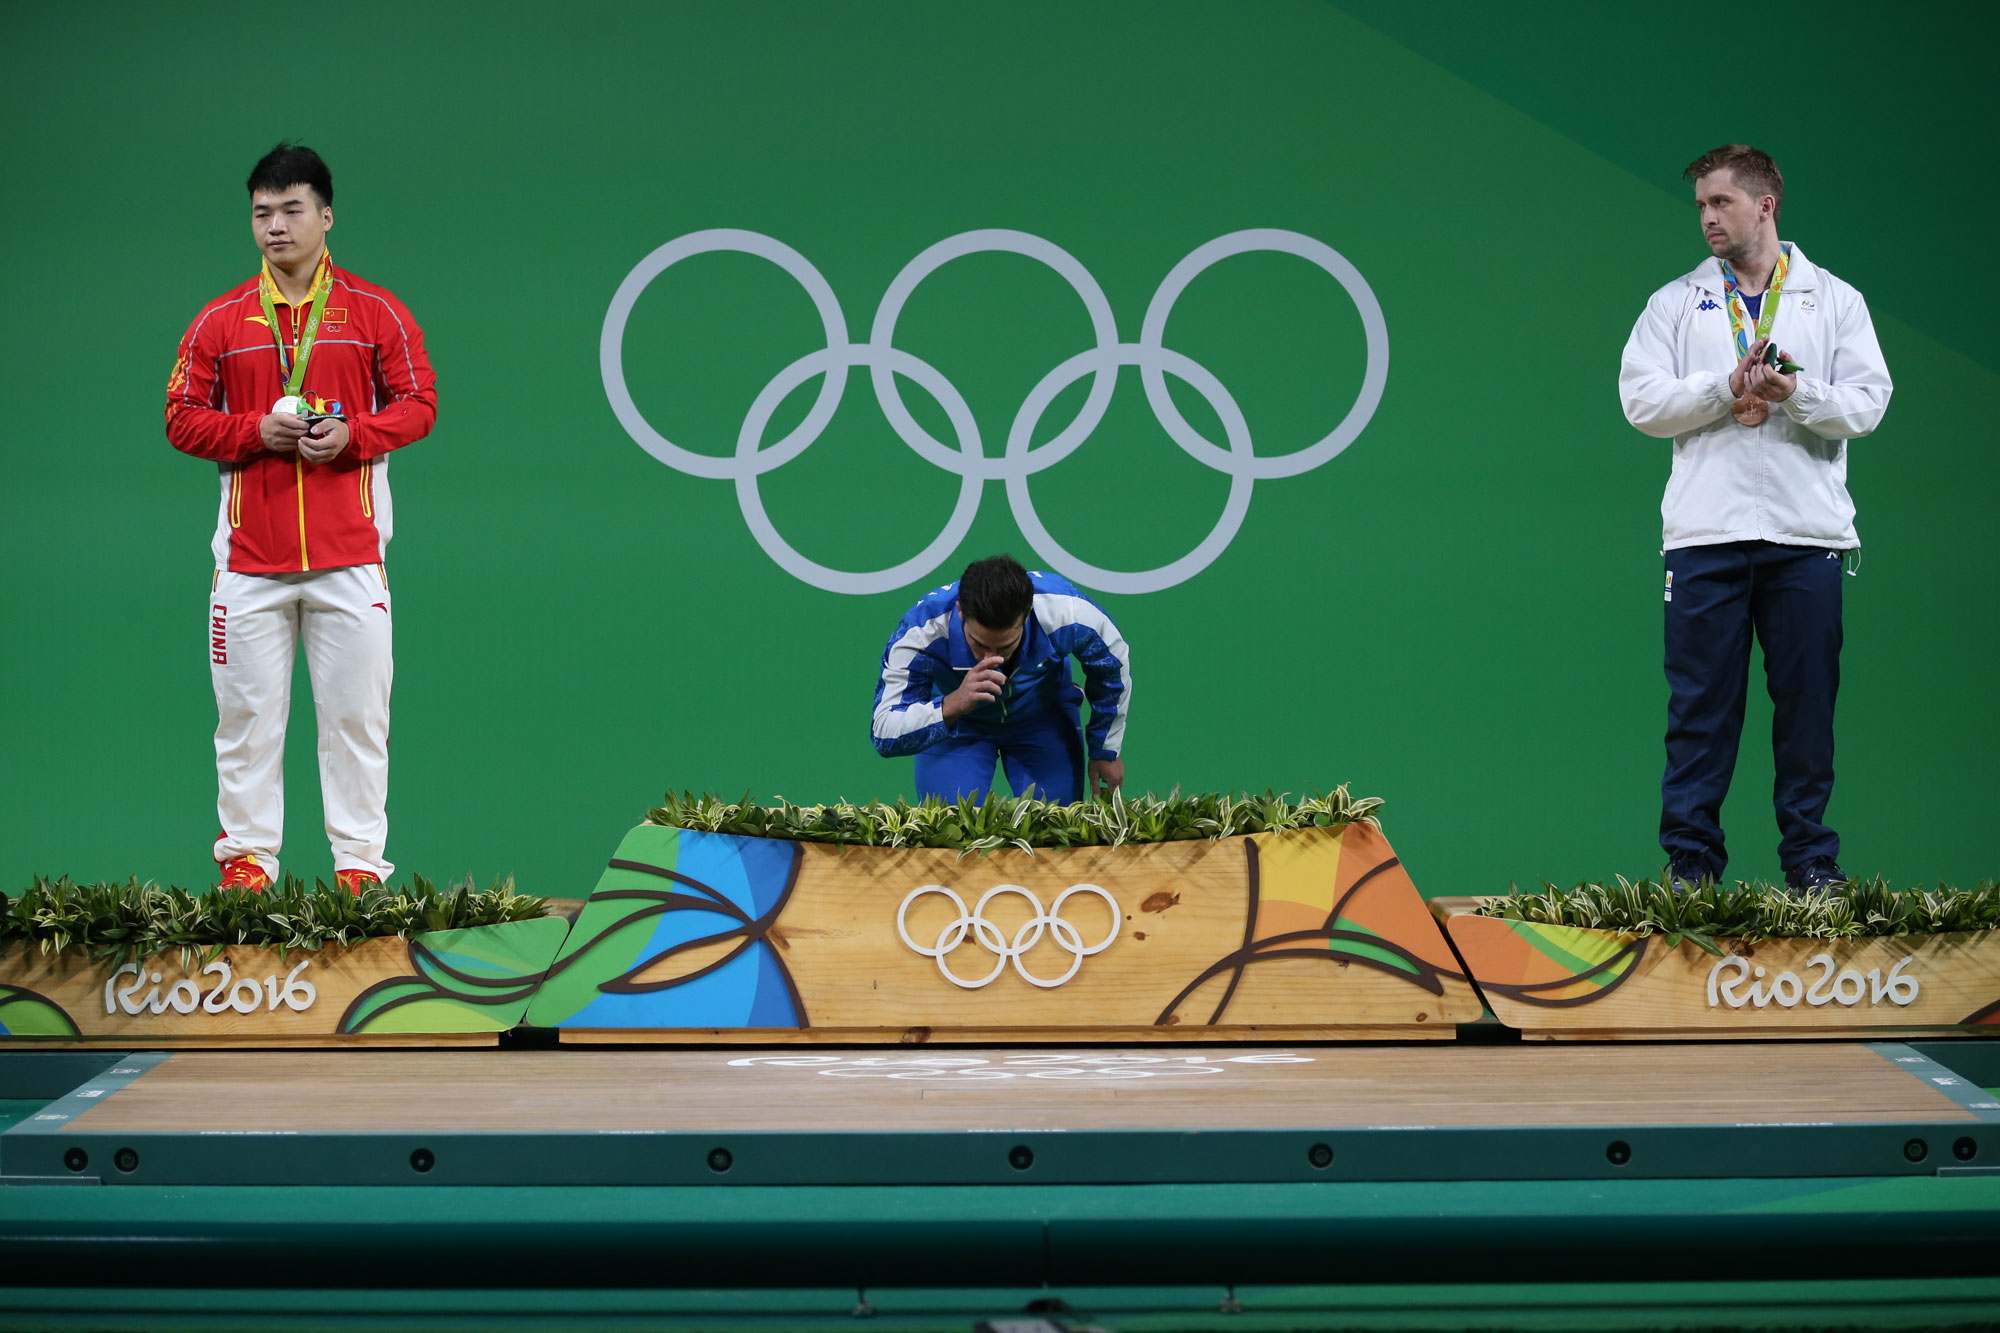 رقص پرچم کیانوش روی تخته پس از کسب طلا(عکس)